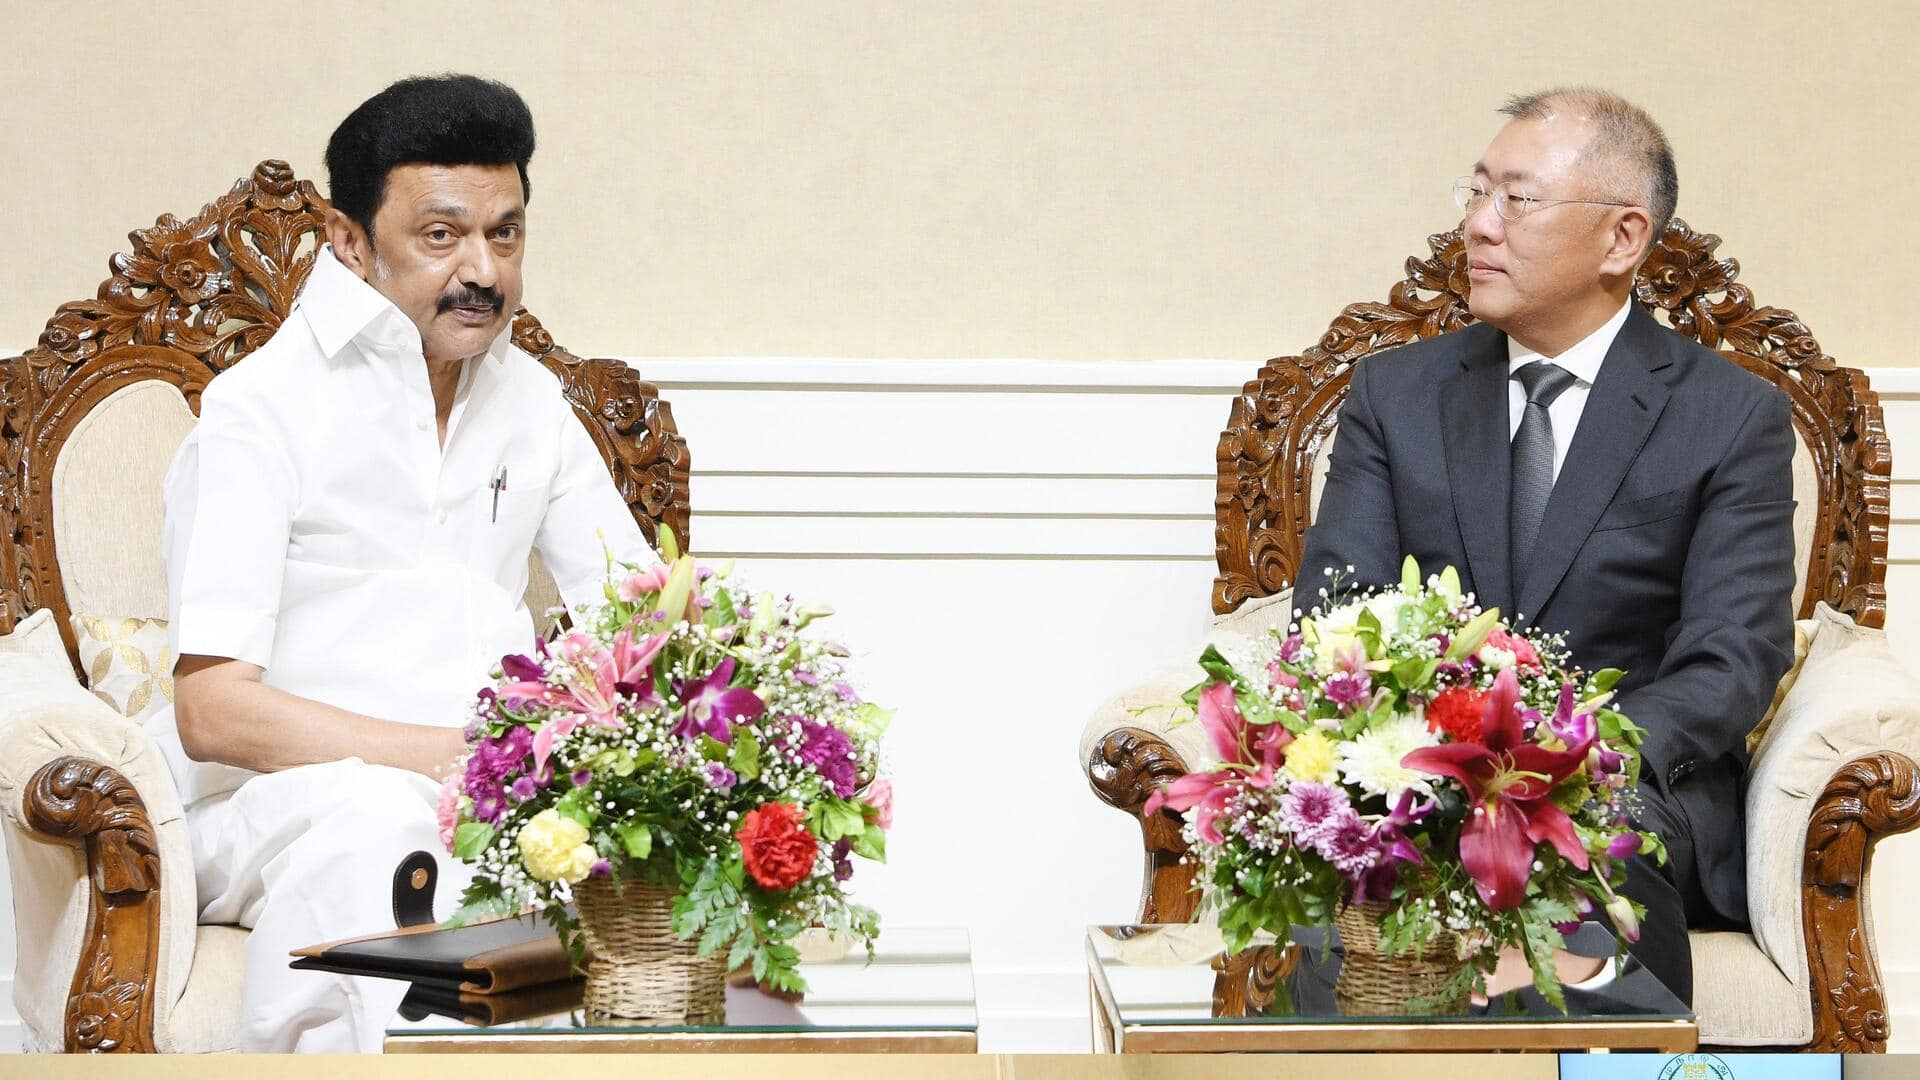 हुंडई के प्रतिनिधिमंडल ने तमिलनाडु के मुख्यमंत्री से की मुलाकात, निवेश को लेकर हुई चर्चा 